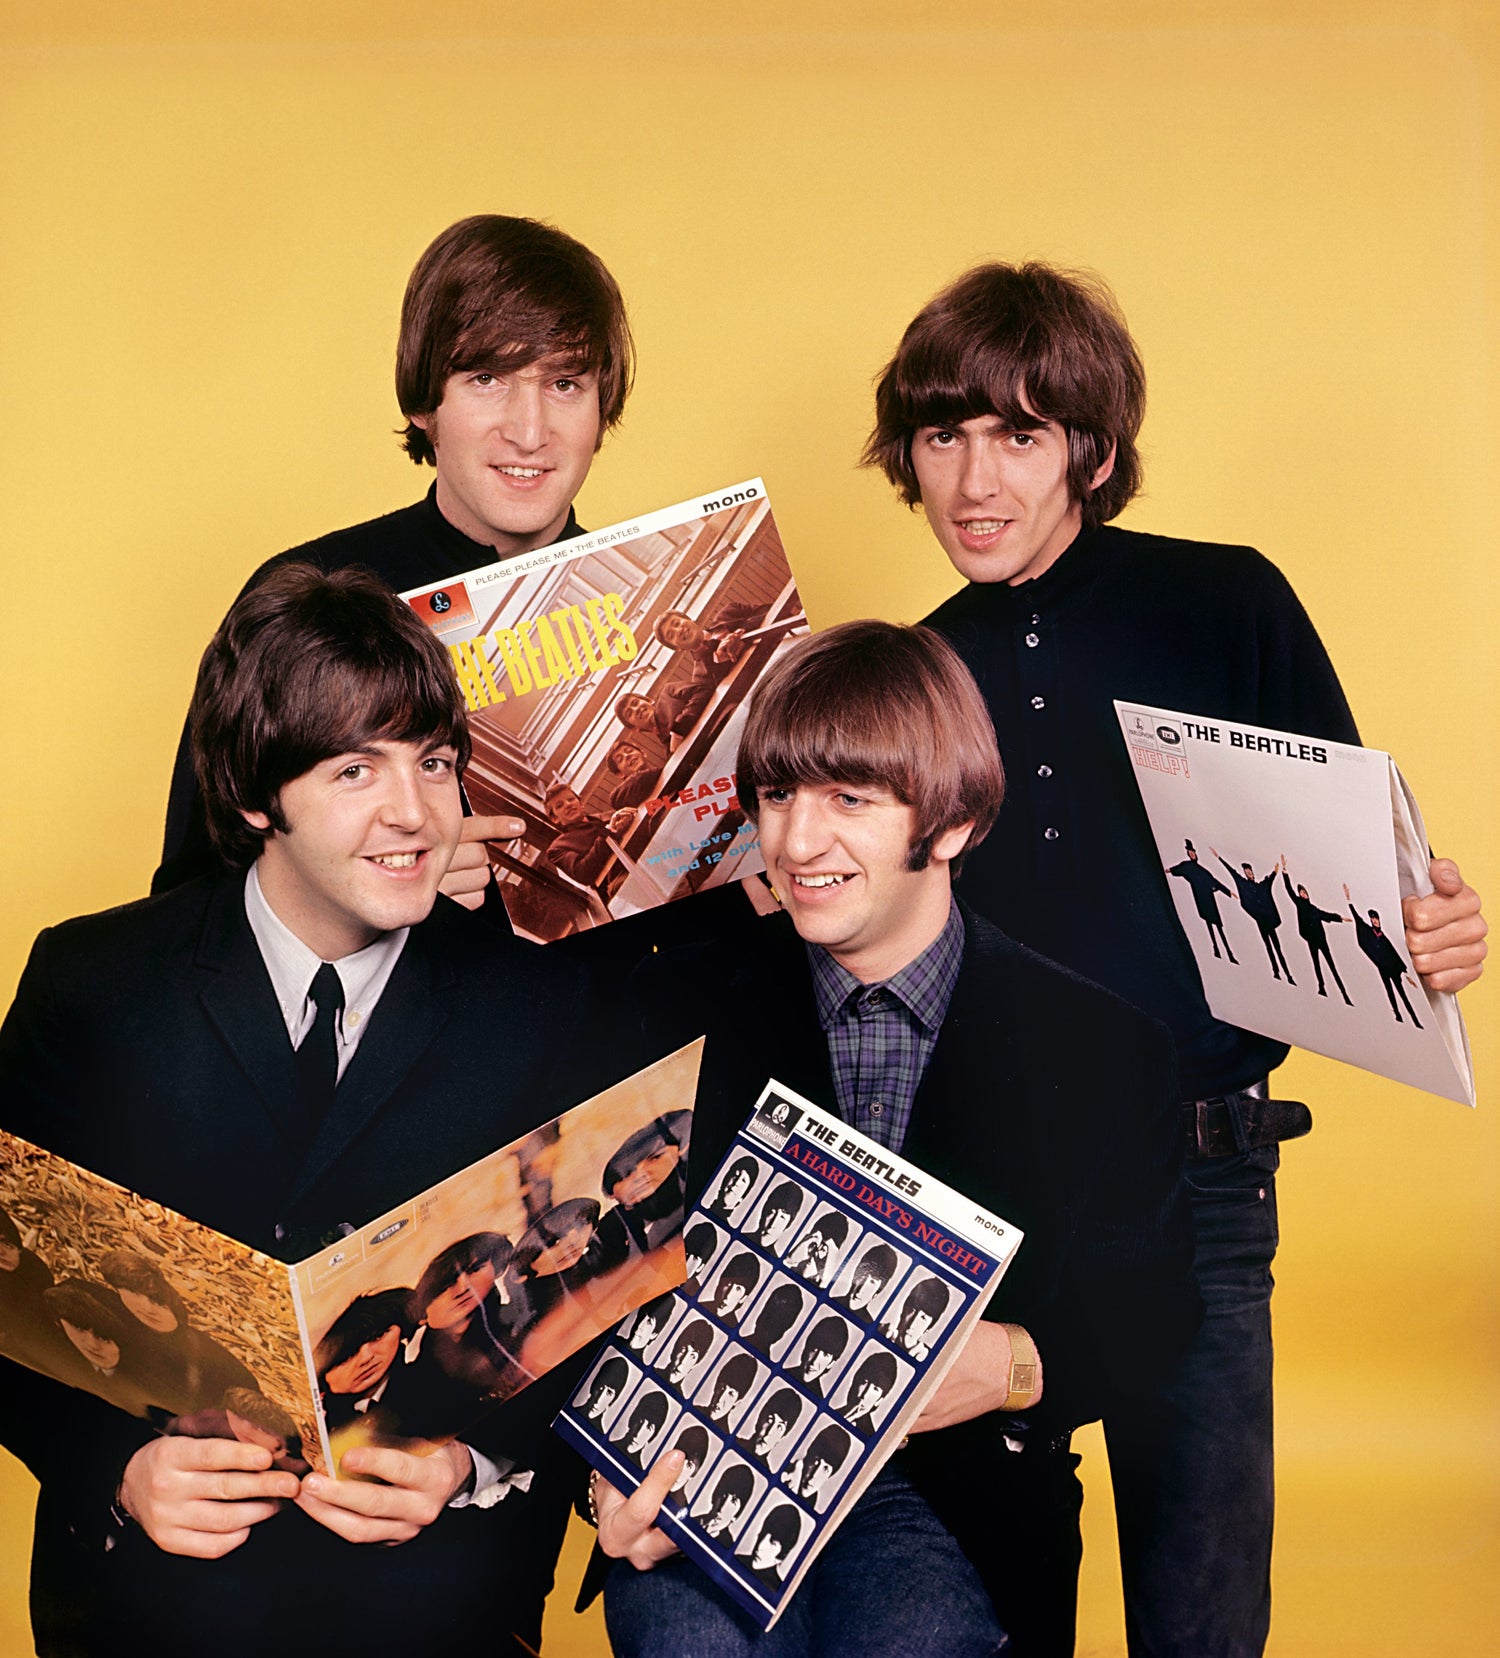 The Beatles Vinyl